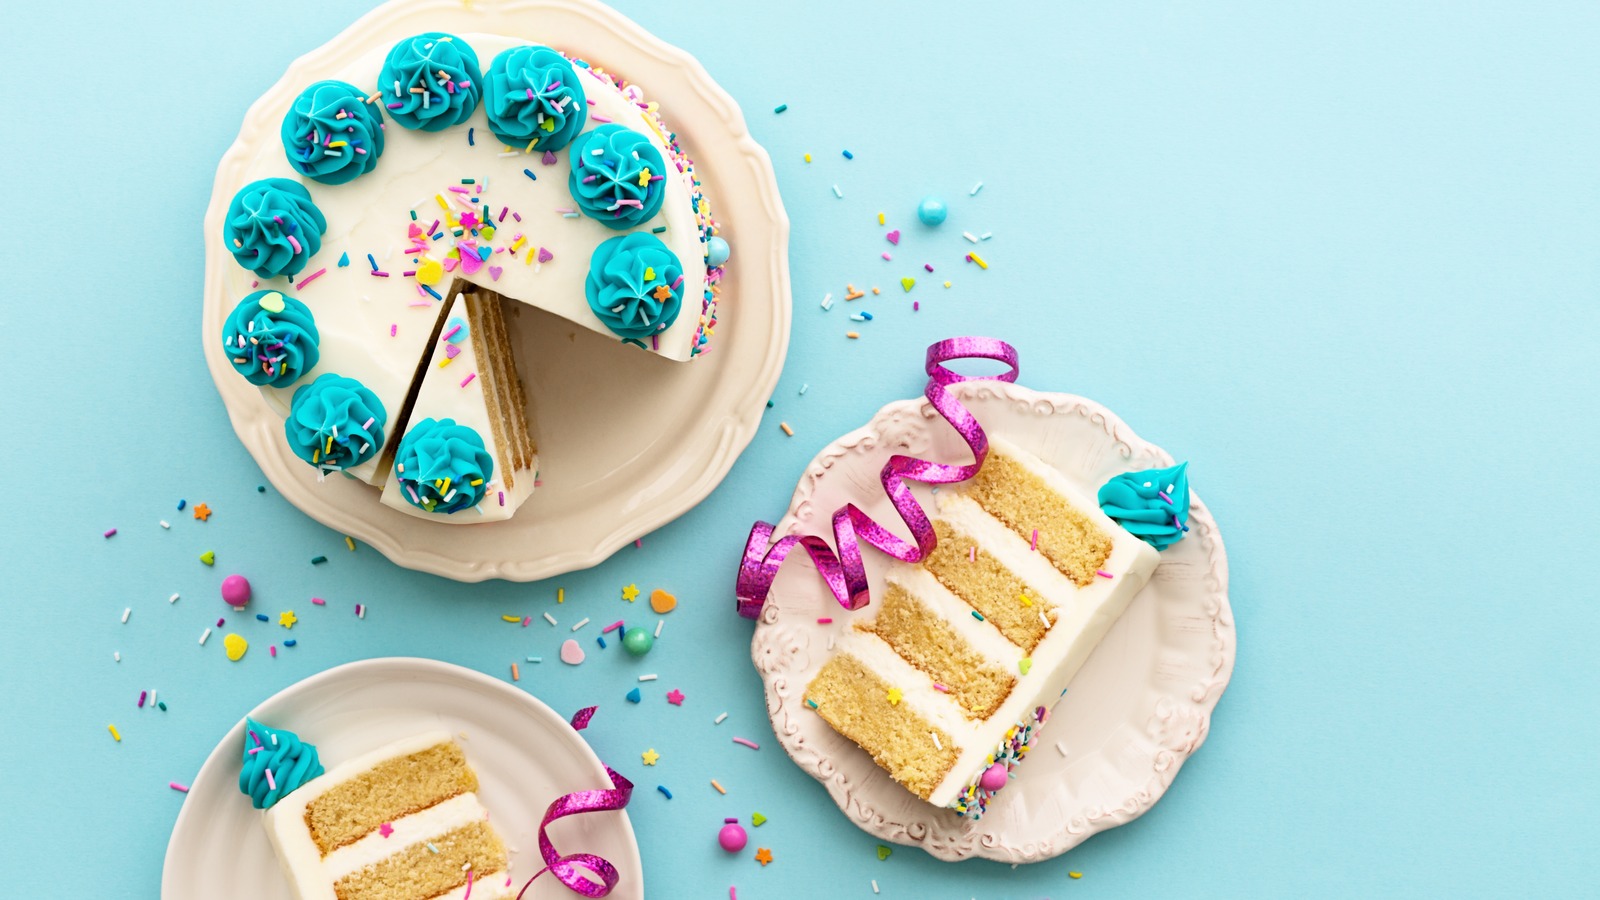 Make Boxed Cake Mix taste like Bakery cake